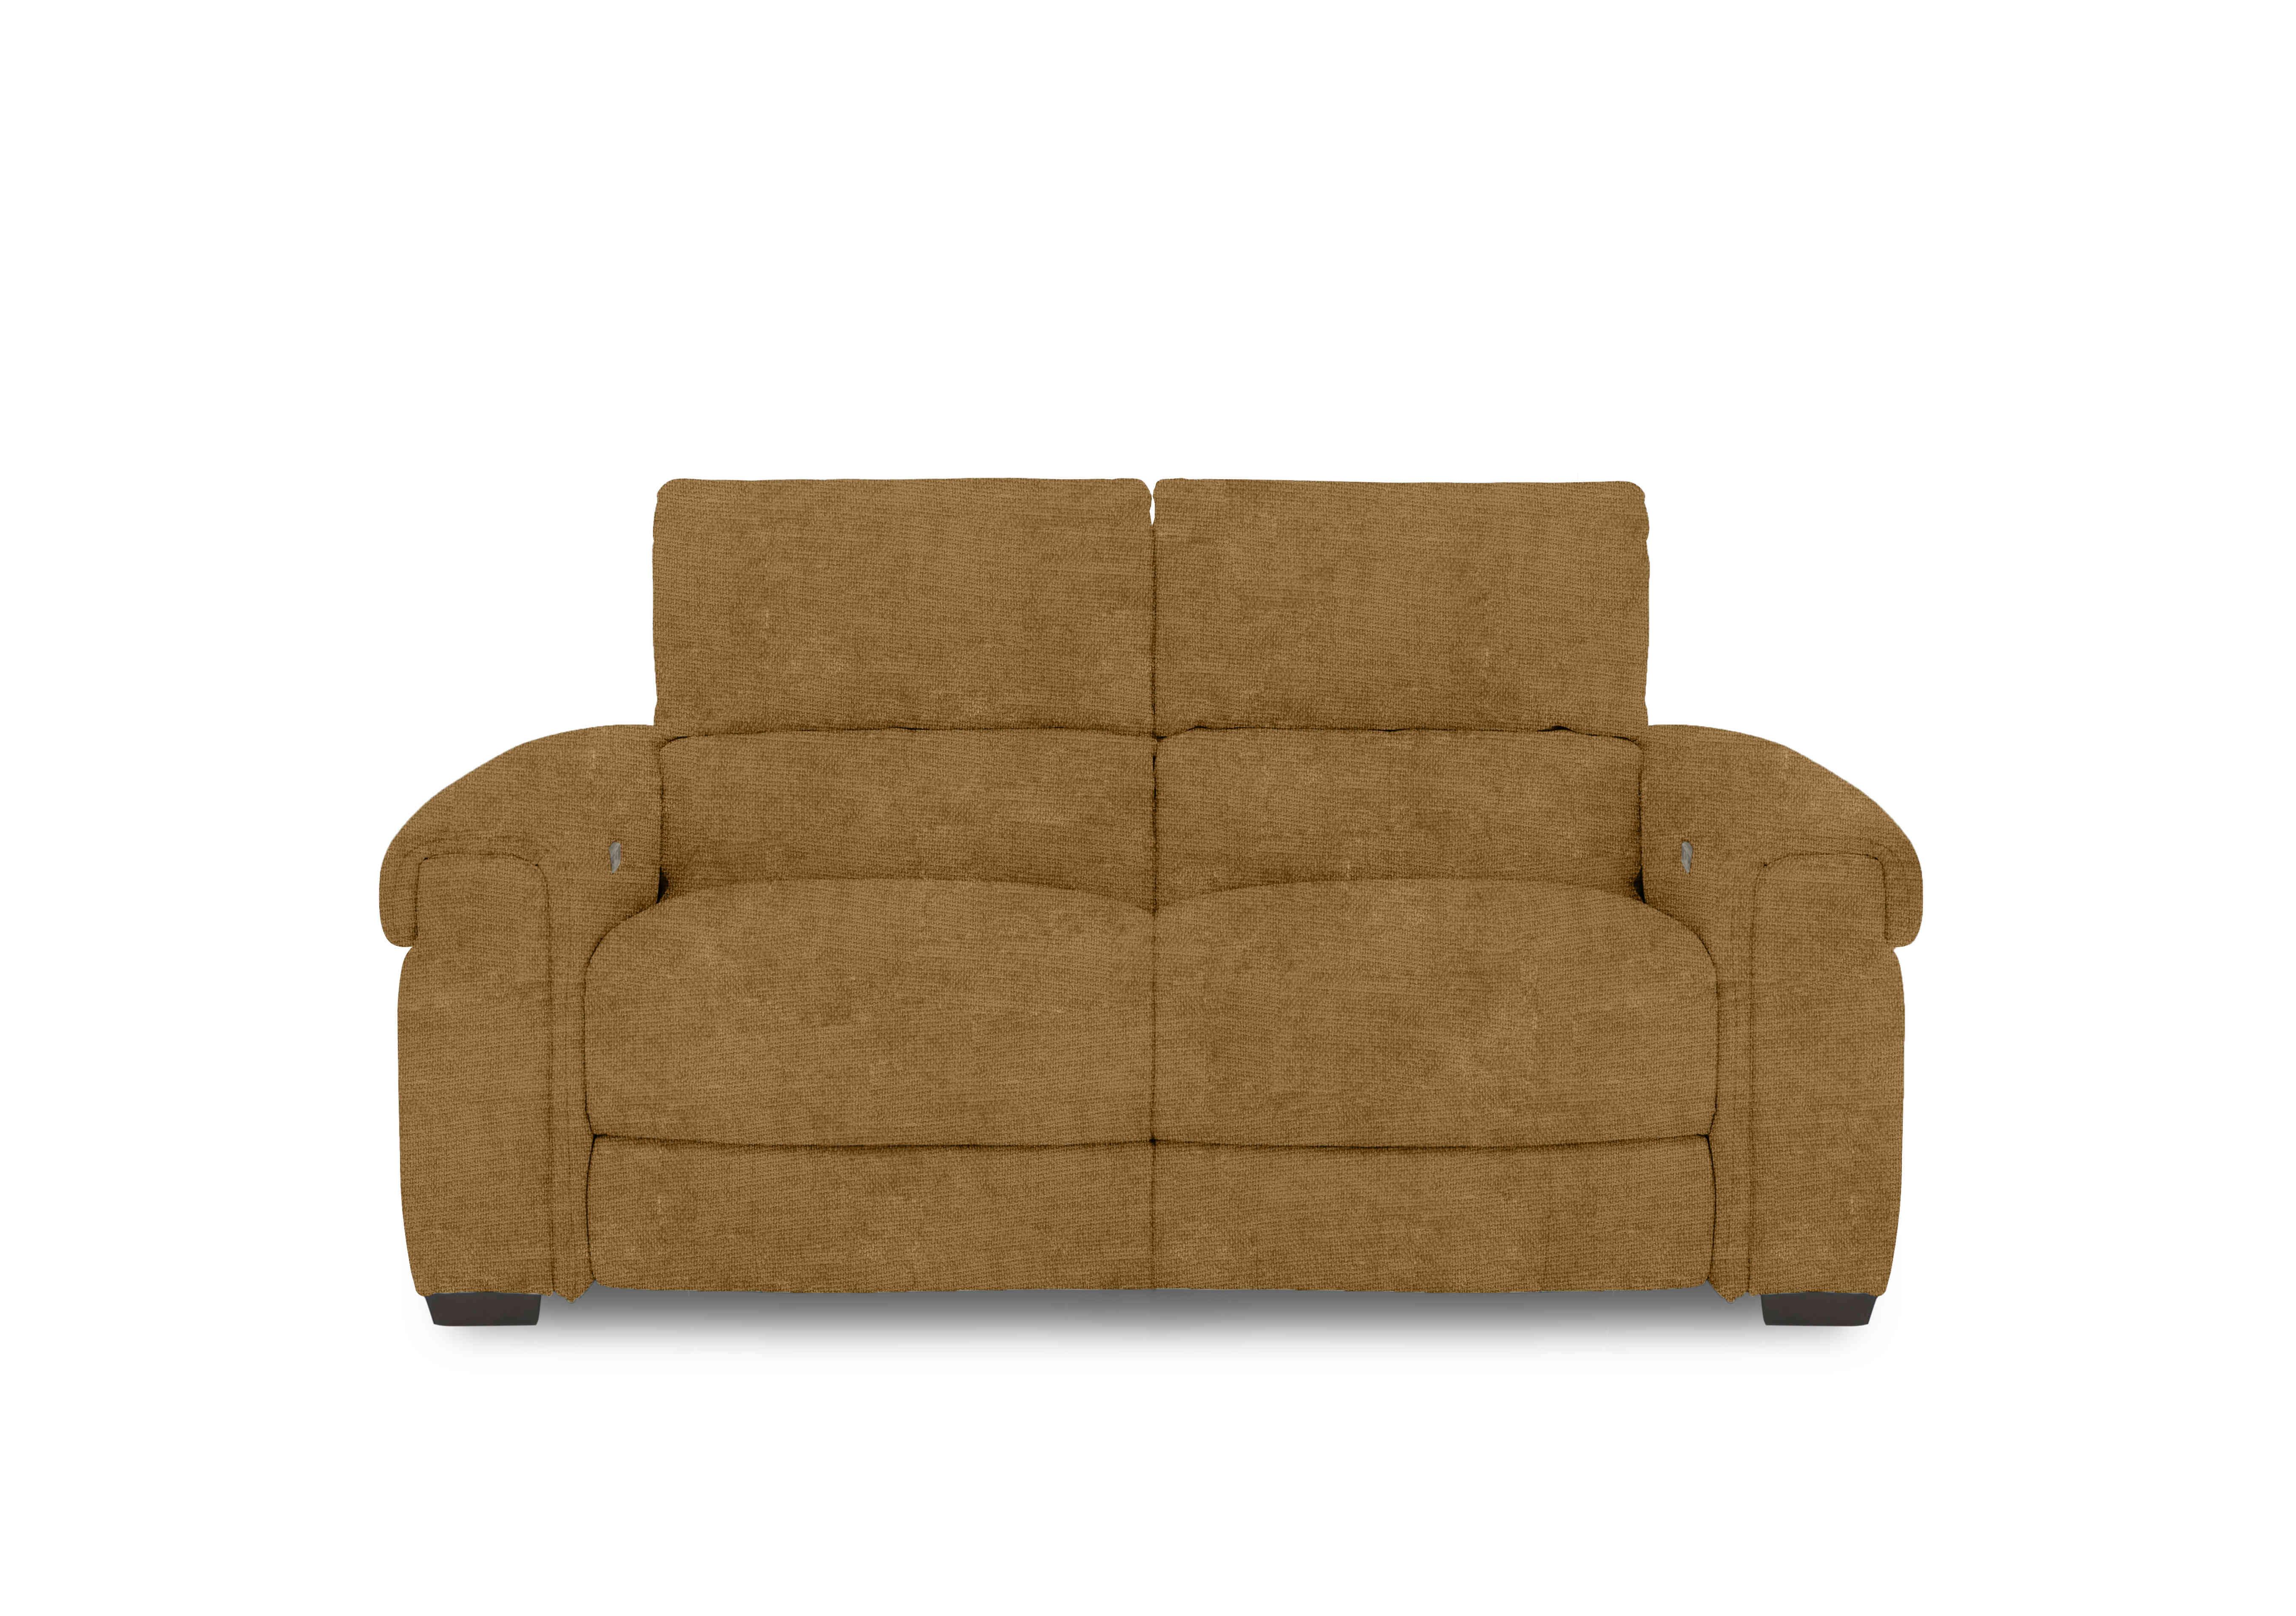 Nixon Fabric 2 Seater Sofa in Fab-Coe-R272 Honey Yellow on Furniture Village